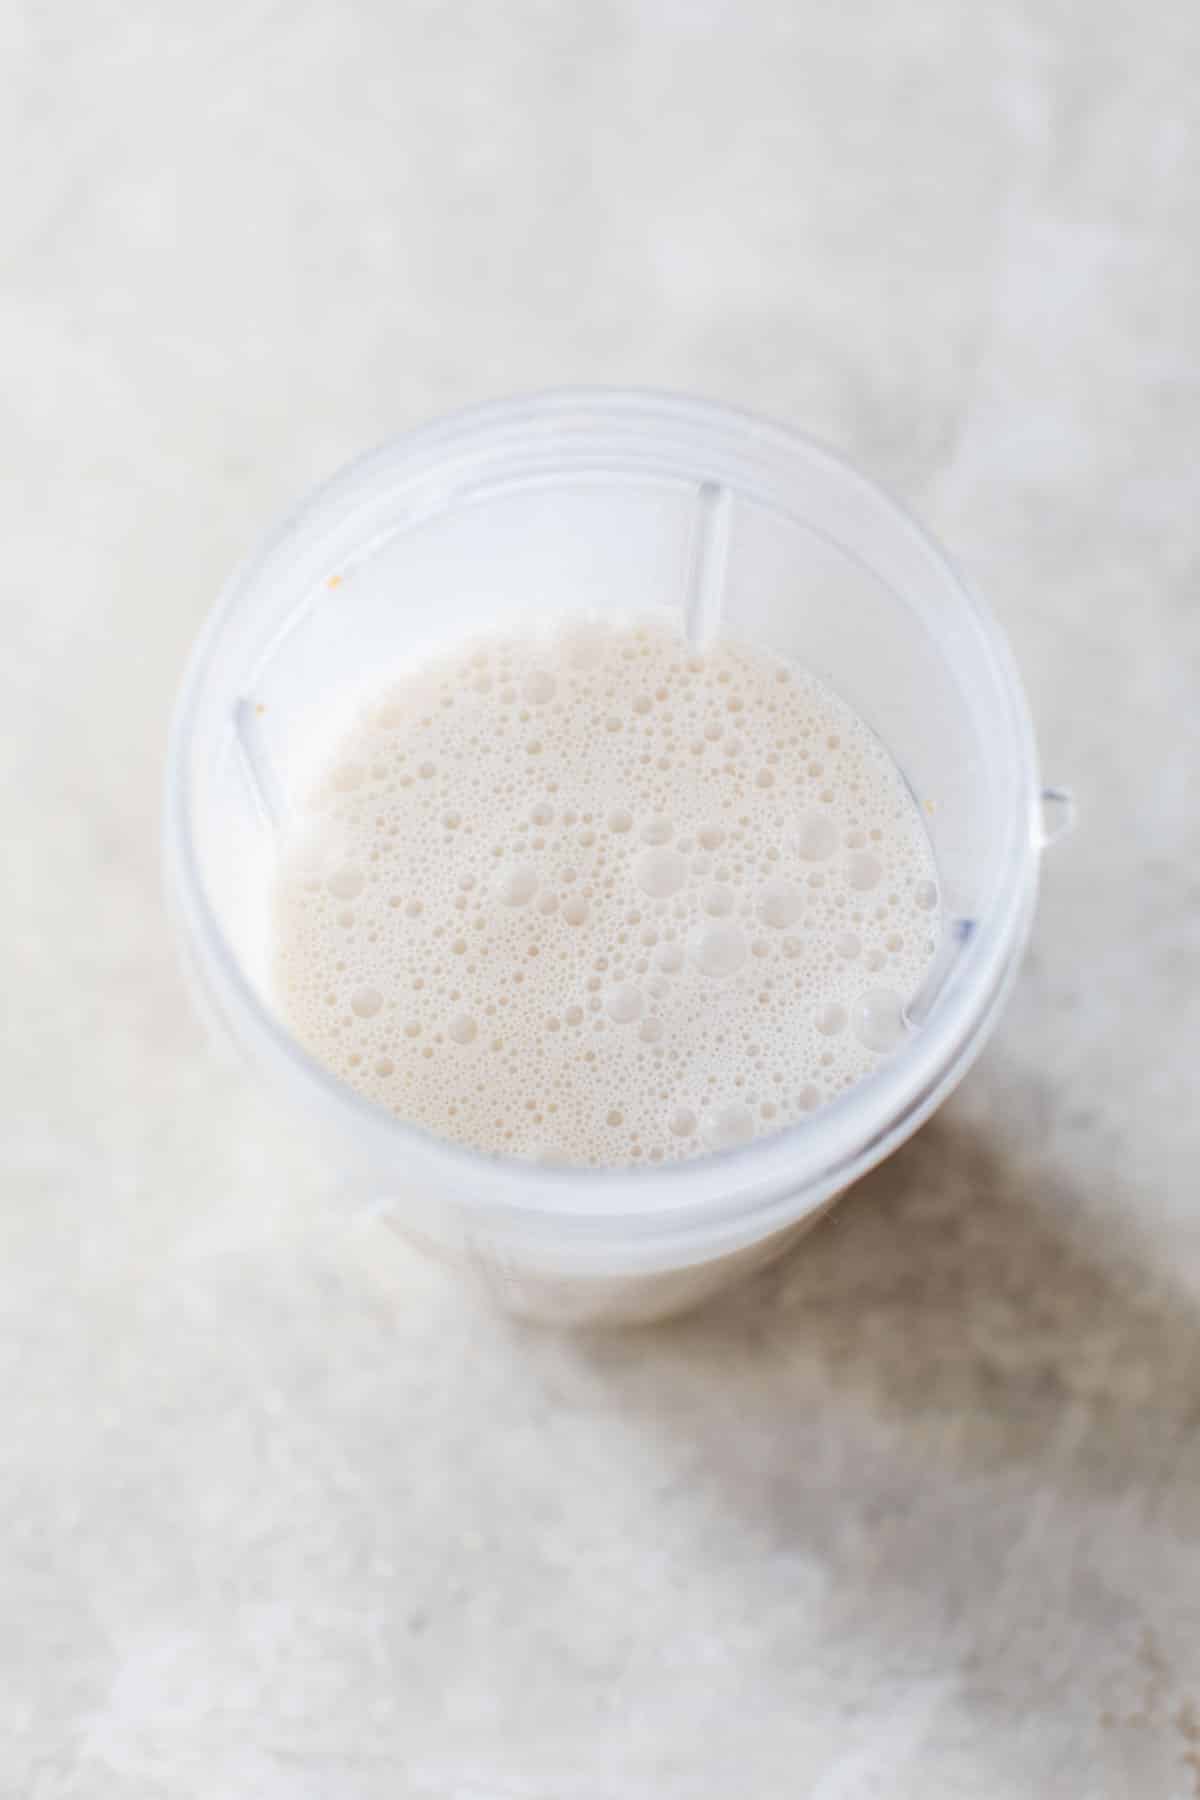 milk blended in a nutribullet blender